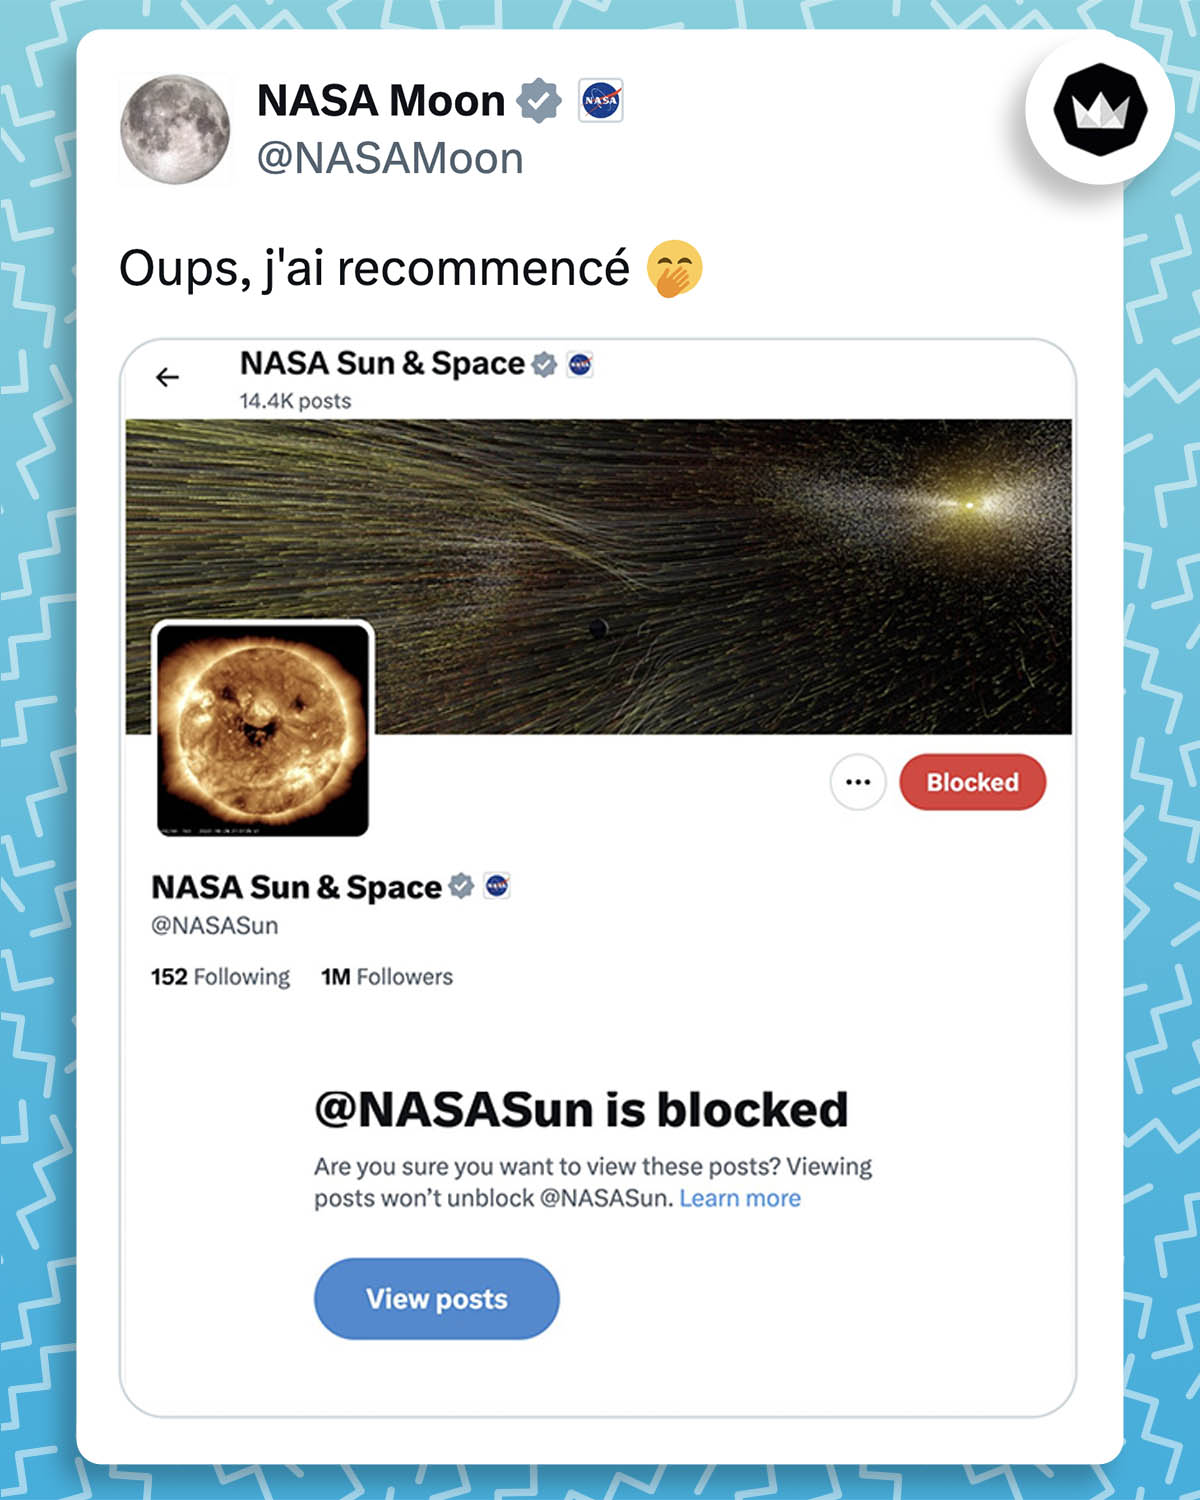 @NASAMoon
"Oups, j'ai recommencé 🤭
#TotalSolarEclipse" 
avec le screen du compte Nasa Sun & Space qui est bloqué.